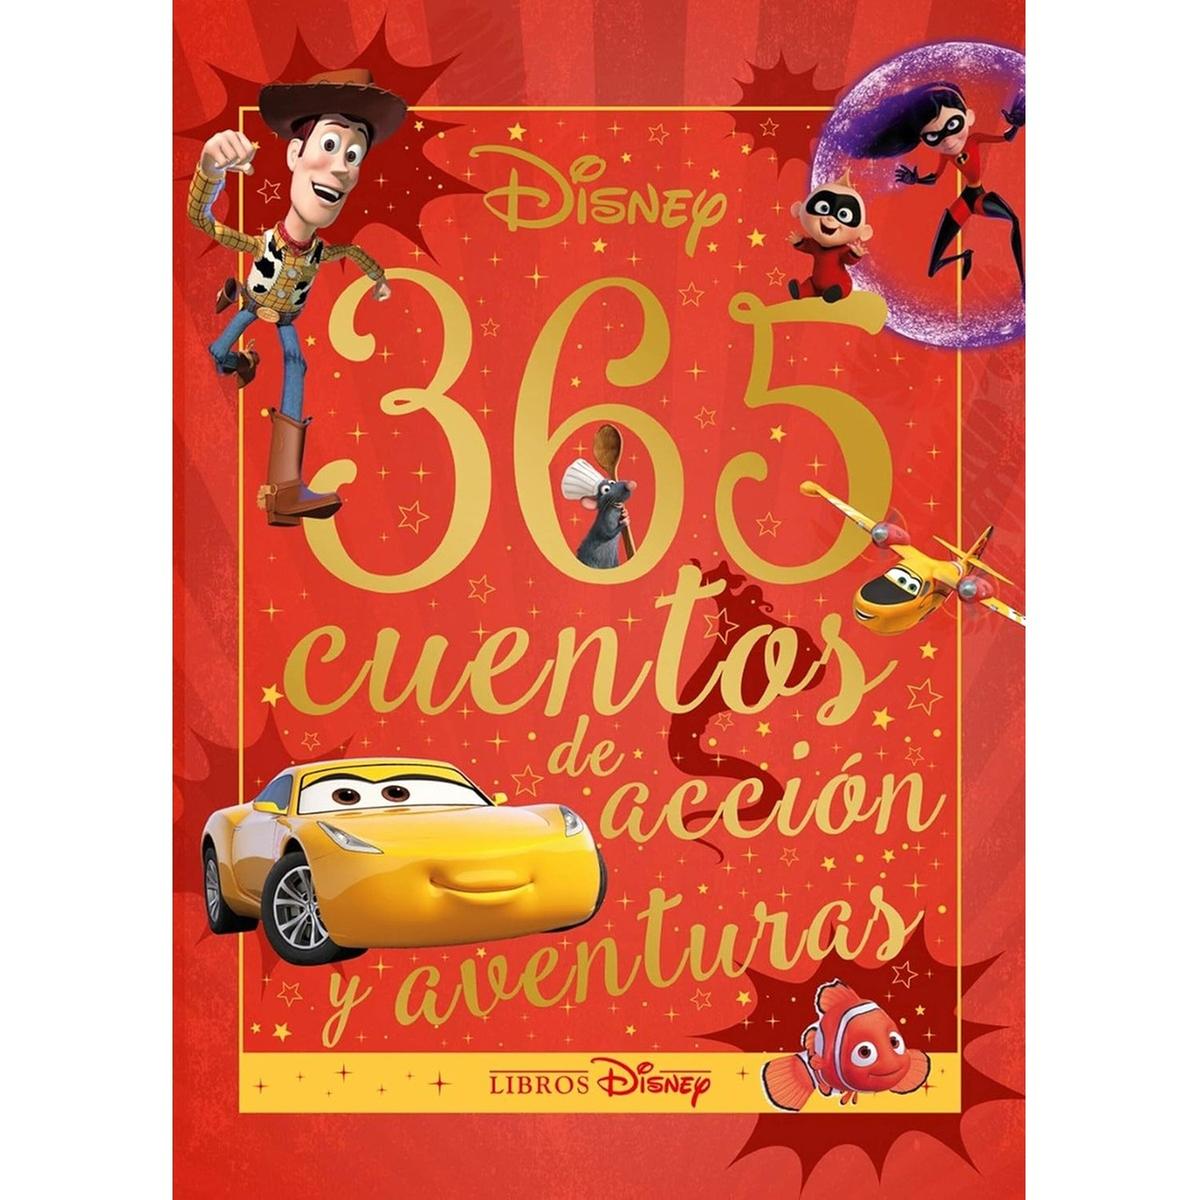 Disney - 365 cuentos de acción y aventuras en tapa dura ㅤ, Planeta